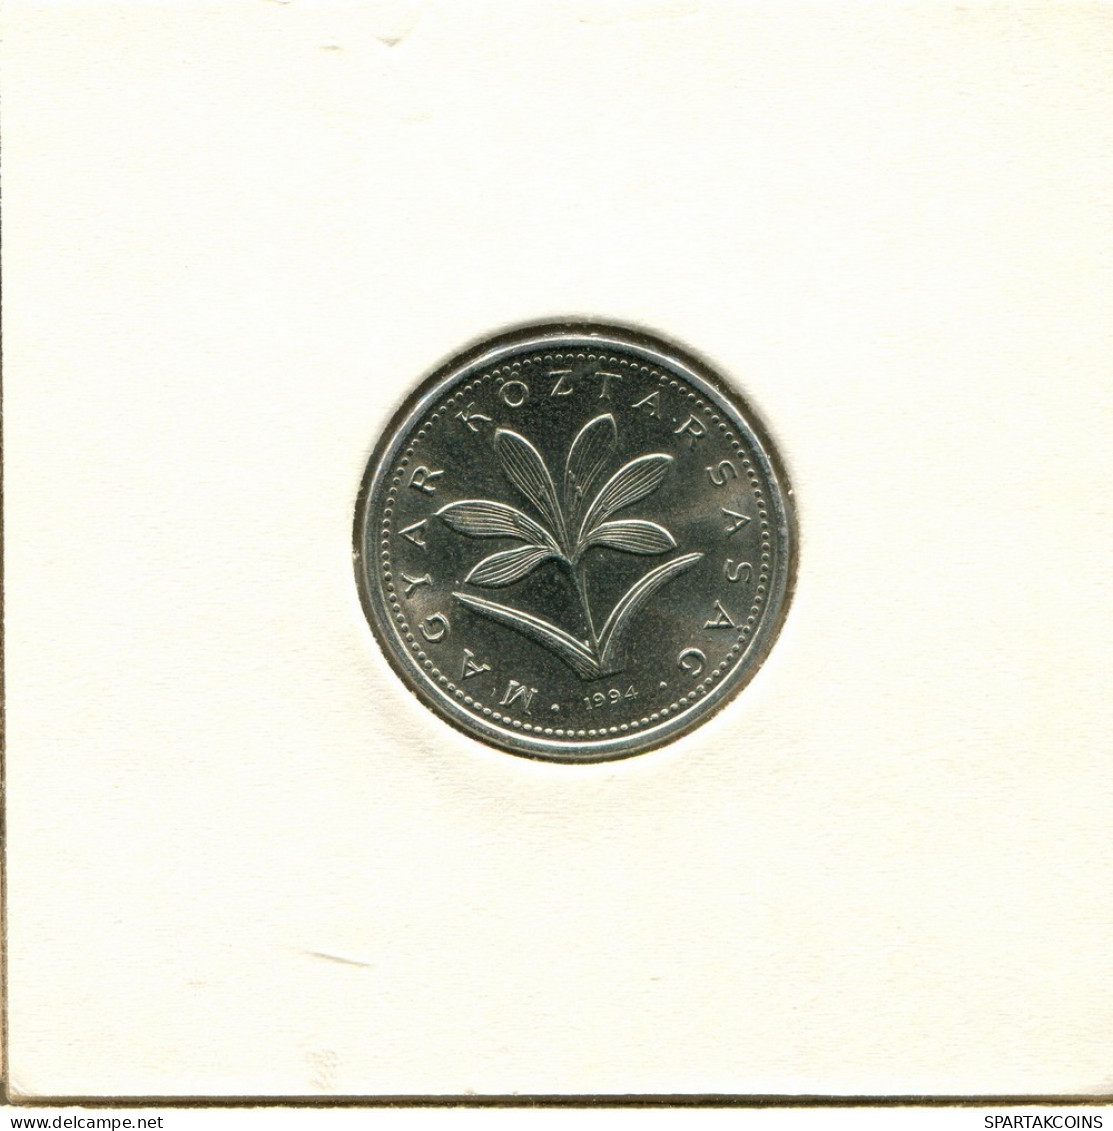 2 FORINT 1994 HUNGRÍA HUNGARY Moneda #AY500.E.A - Hongrie